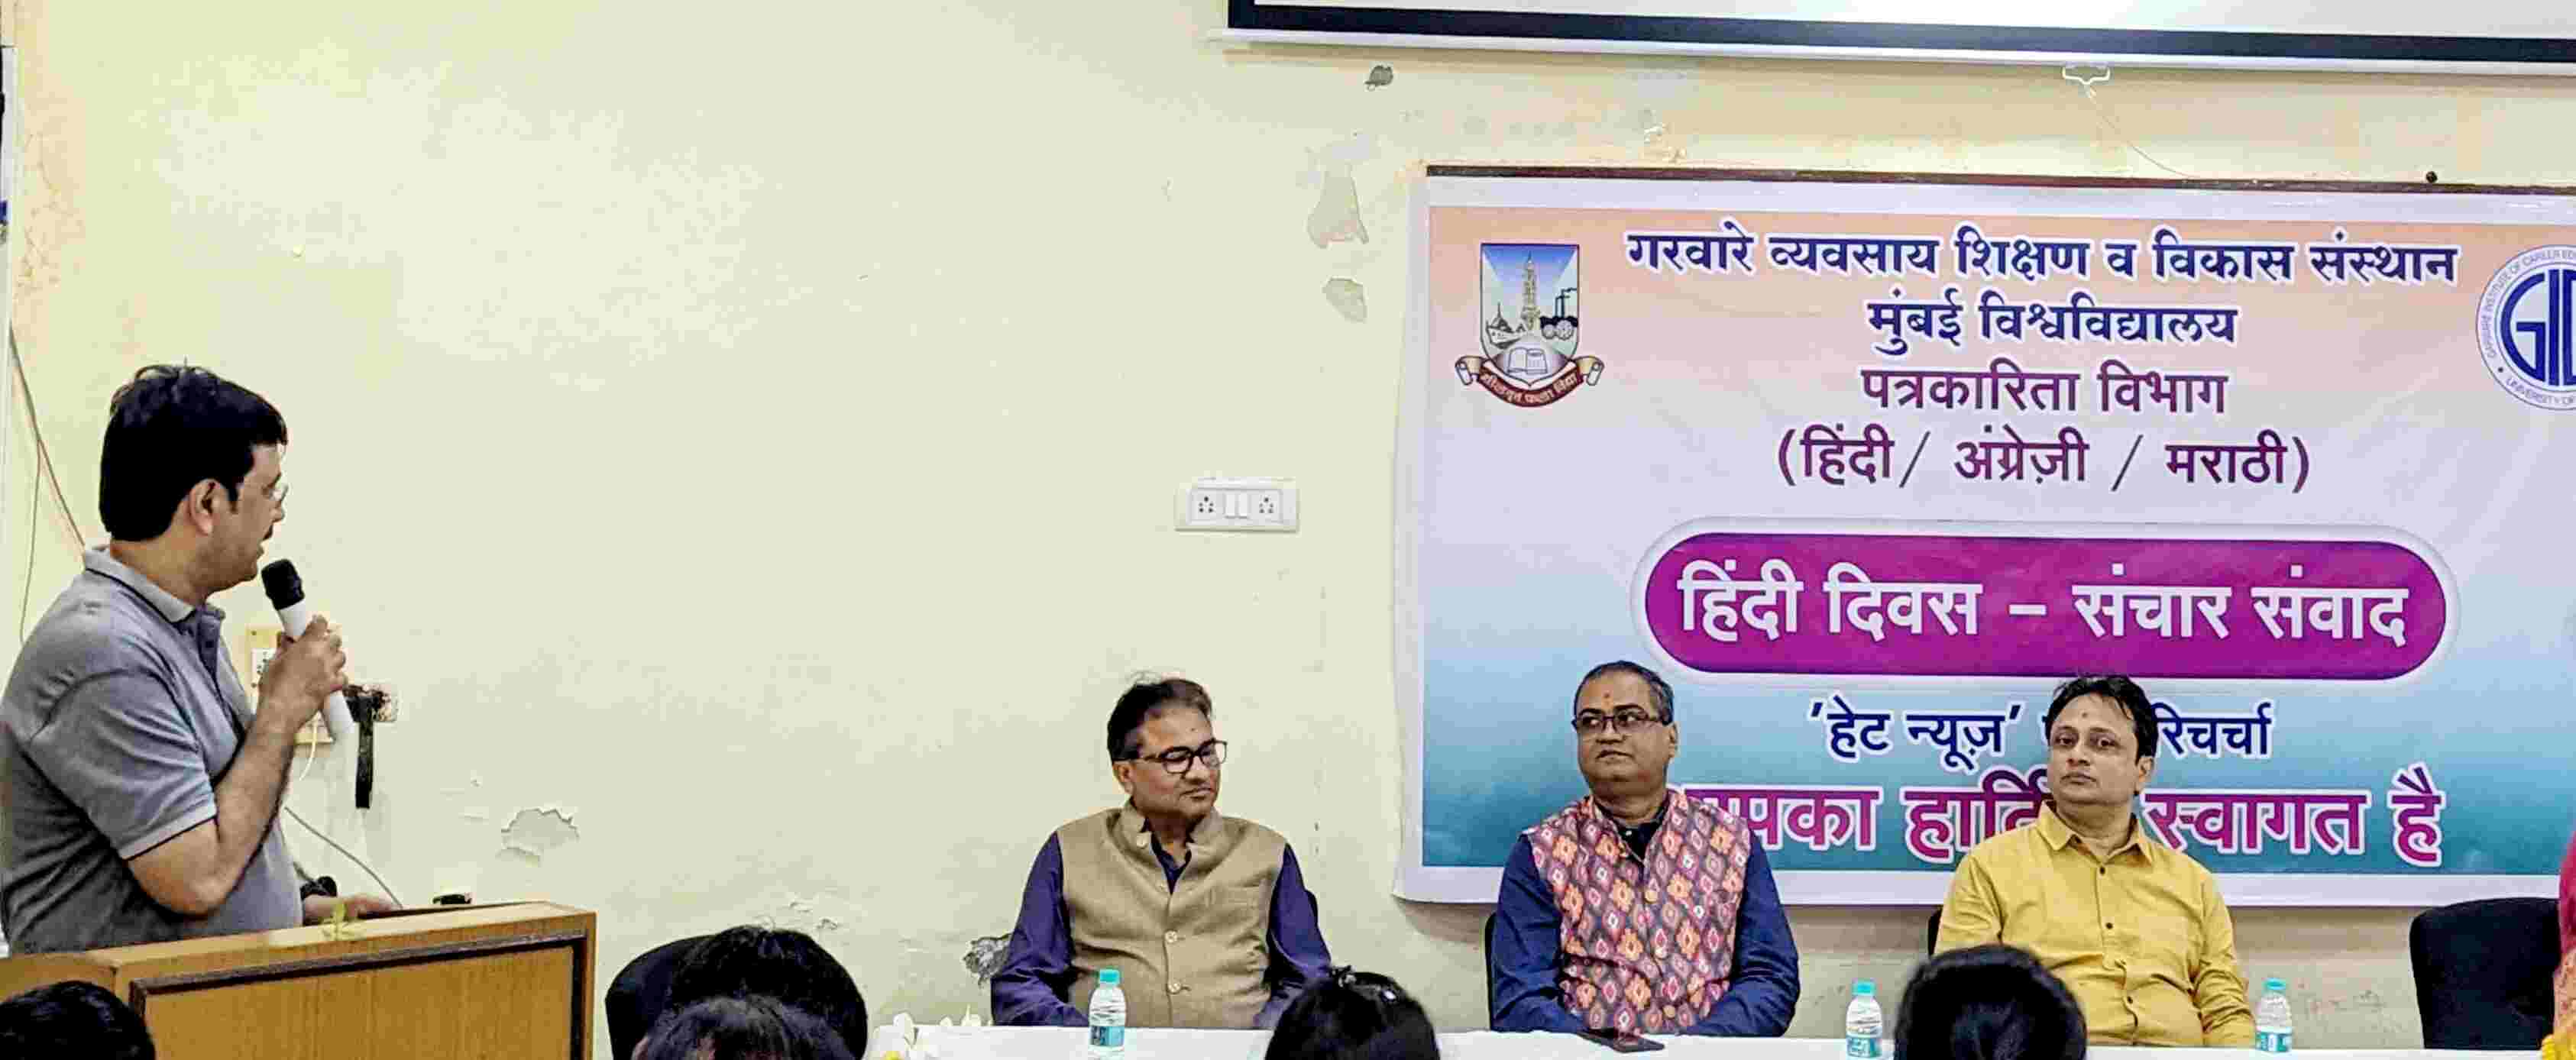 गरवारे संस्थान में मनाया गया हिंदी दिवस- हेट न्यूज़ पर हुई परिचर्चा